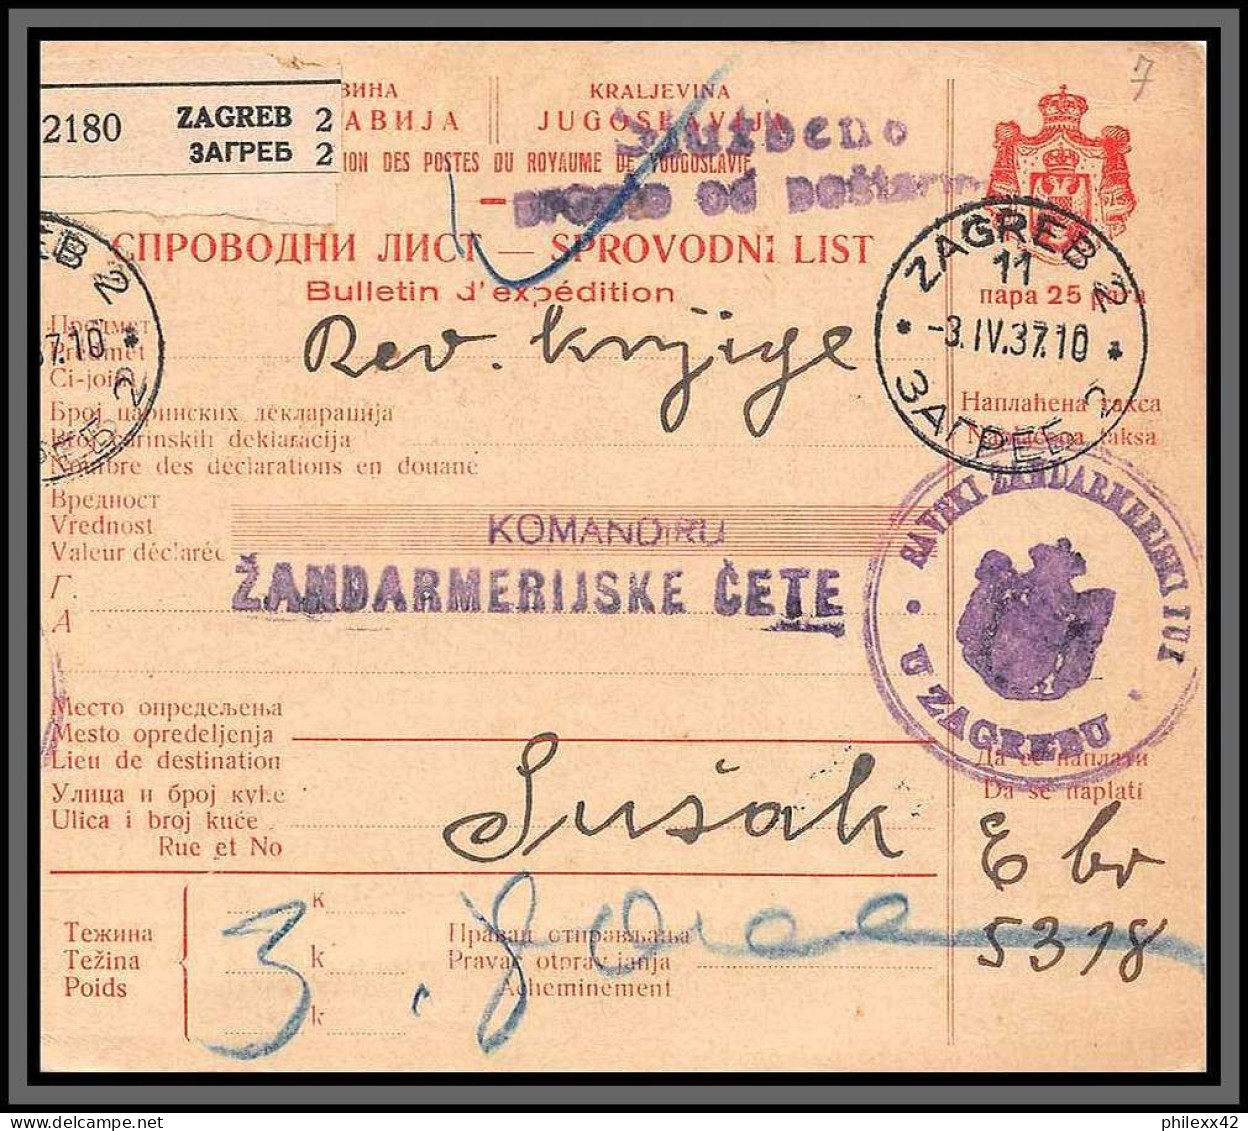 11129 1937 Bulletin De Colis Postal Zagreb Croatie Croatia  - Kroatien